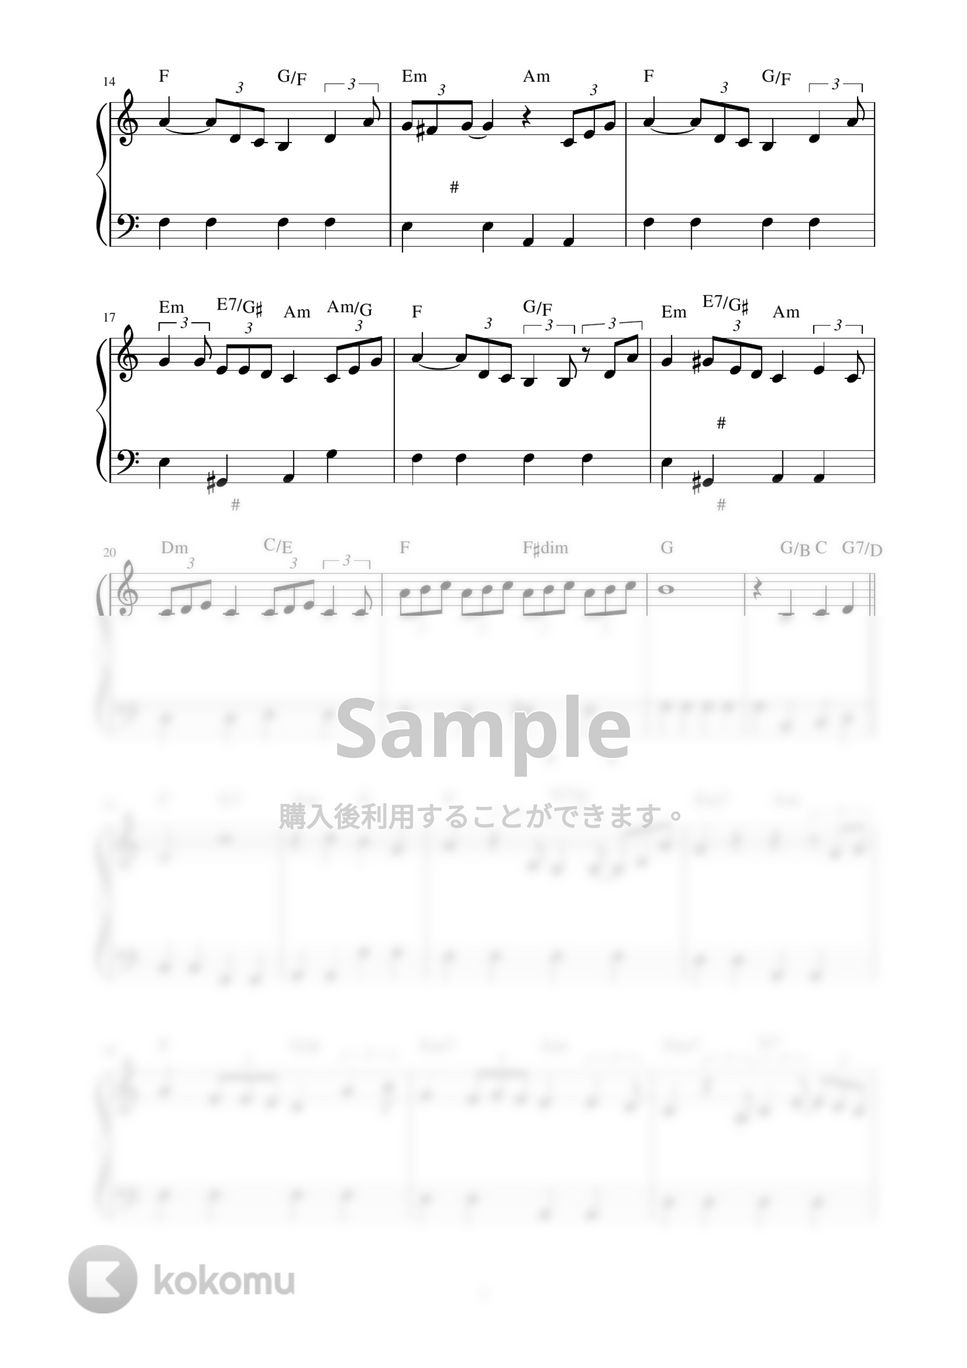 プリンセス プリンセス - M (ピアノ楽譜 / かんたん両手 / 歌詞付き / ドレミ付き / 初心者向き) by piano.tokyo